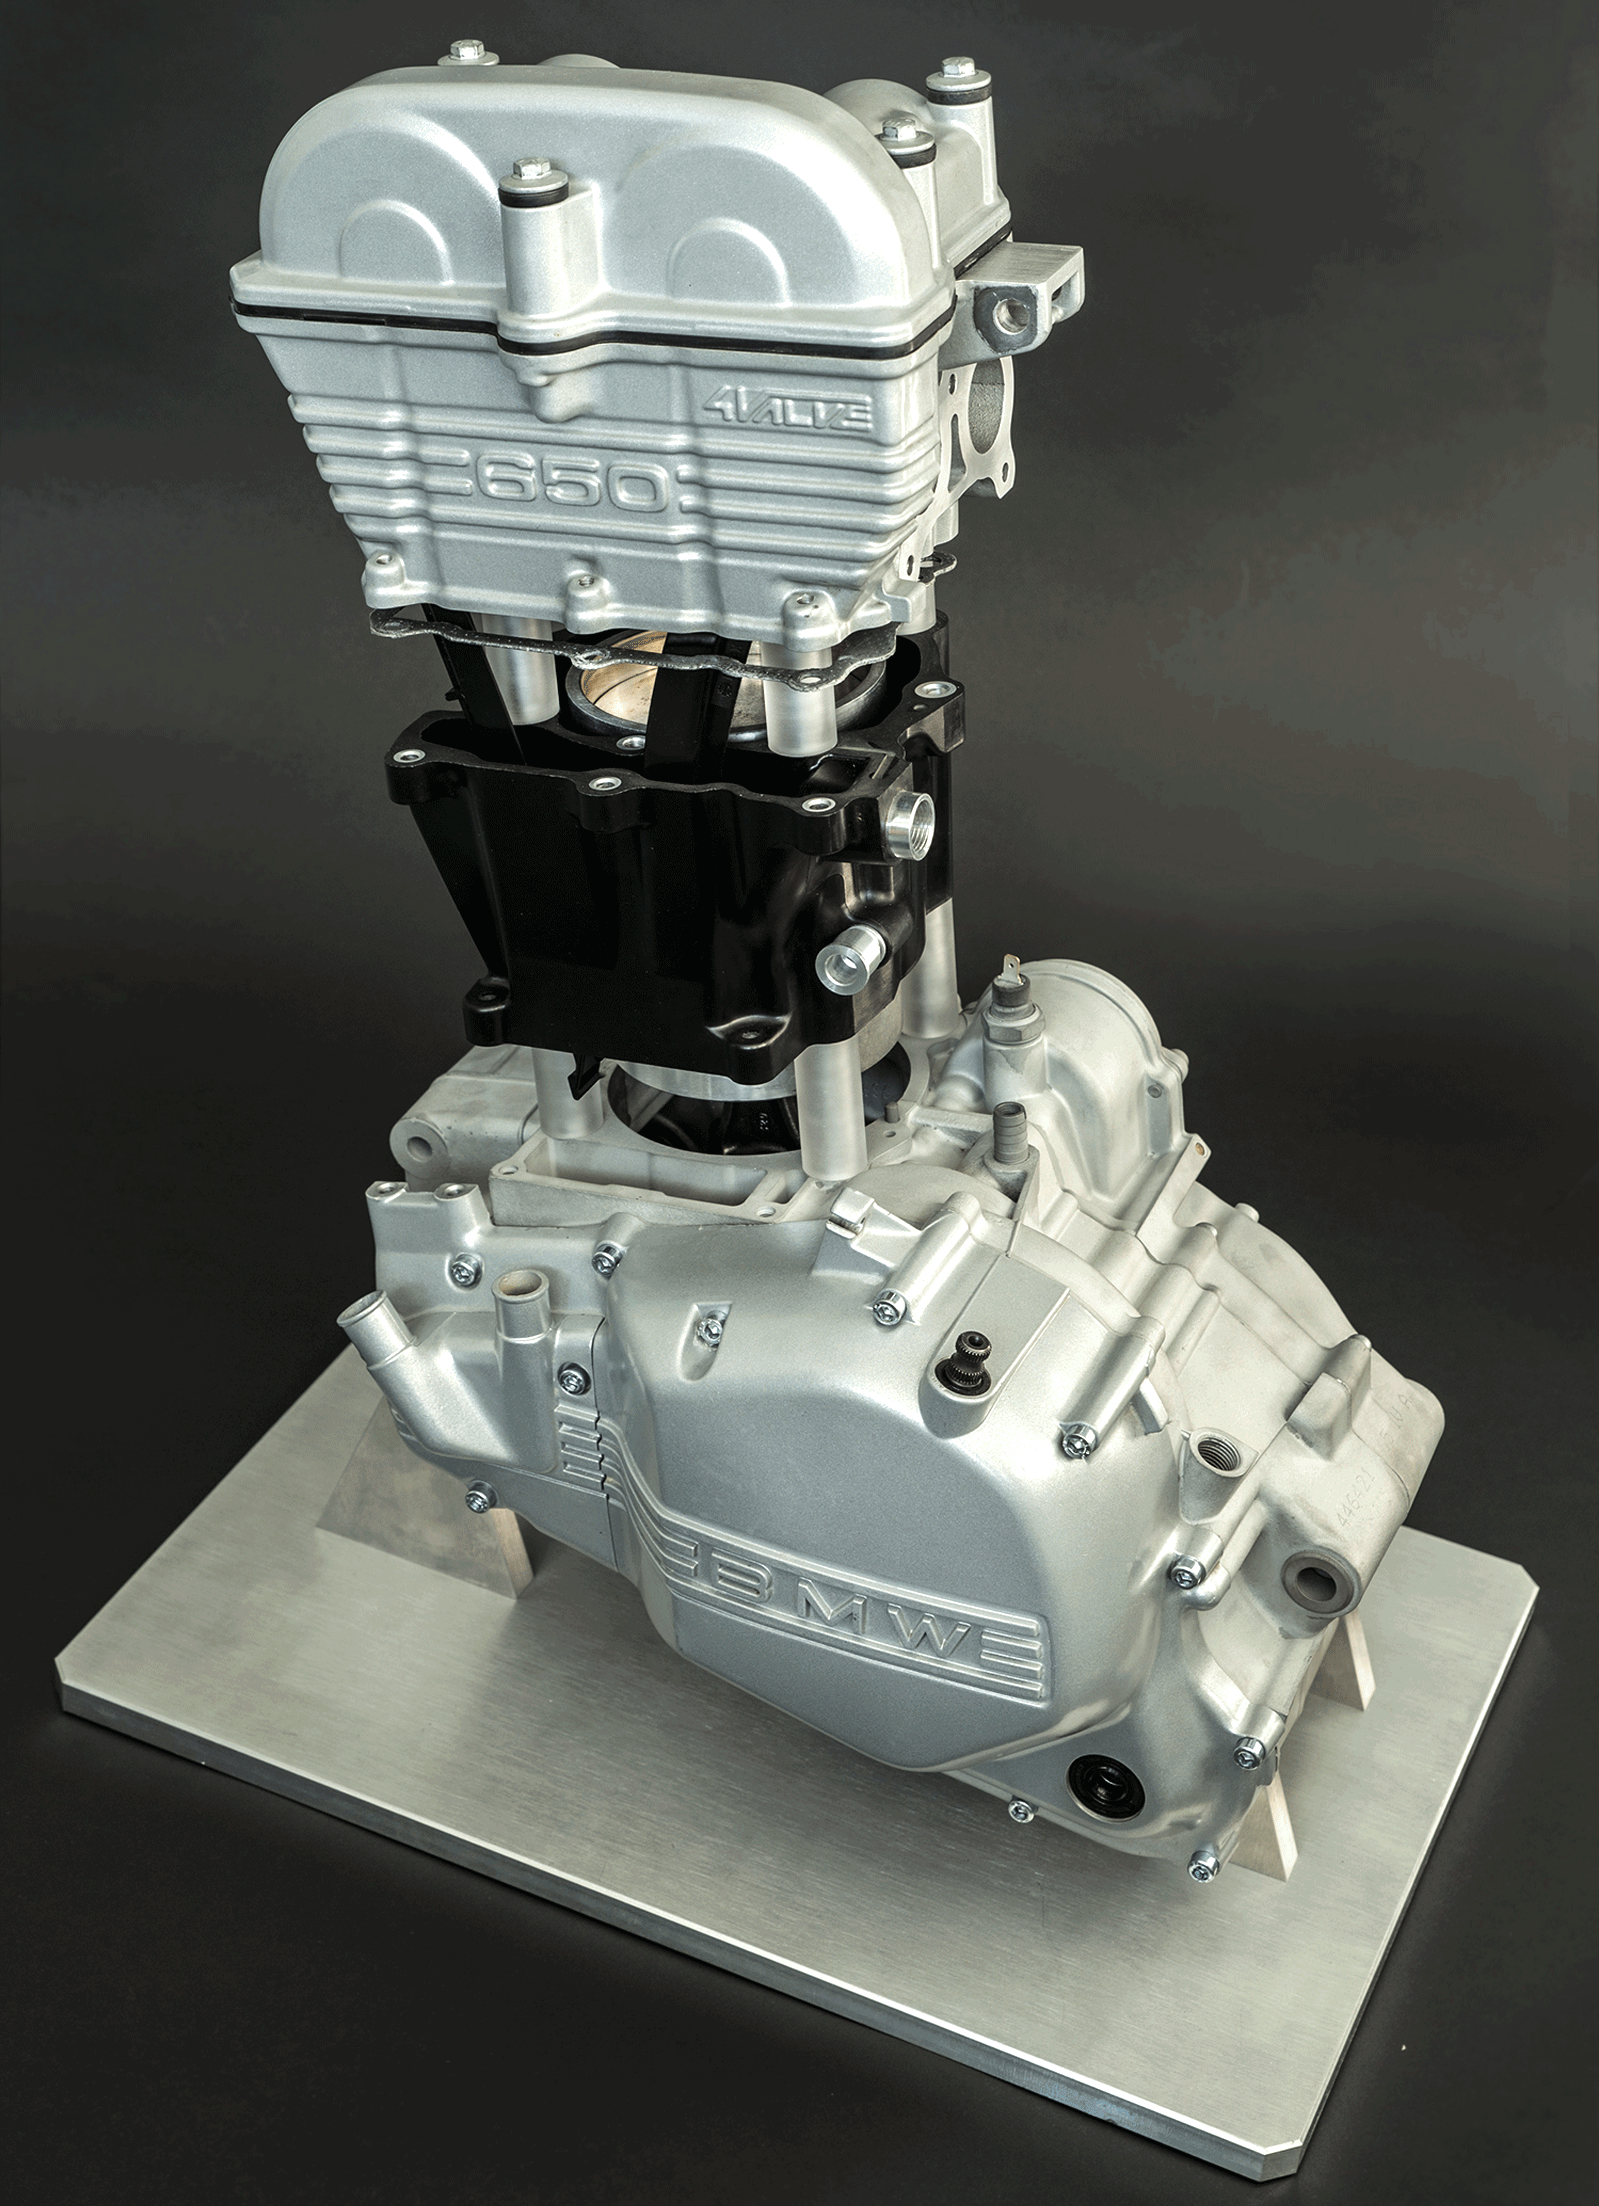 Der Forschungsmotor aus Kunststoff mit eingebautem Leichtbau-Zylindergehäuse: Das Bild zeigt einen Modellmotor, der auf der Hannover Messe gezeigt wird.